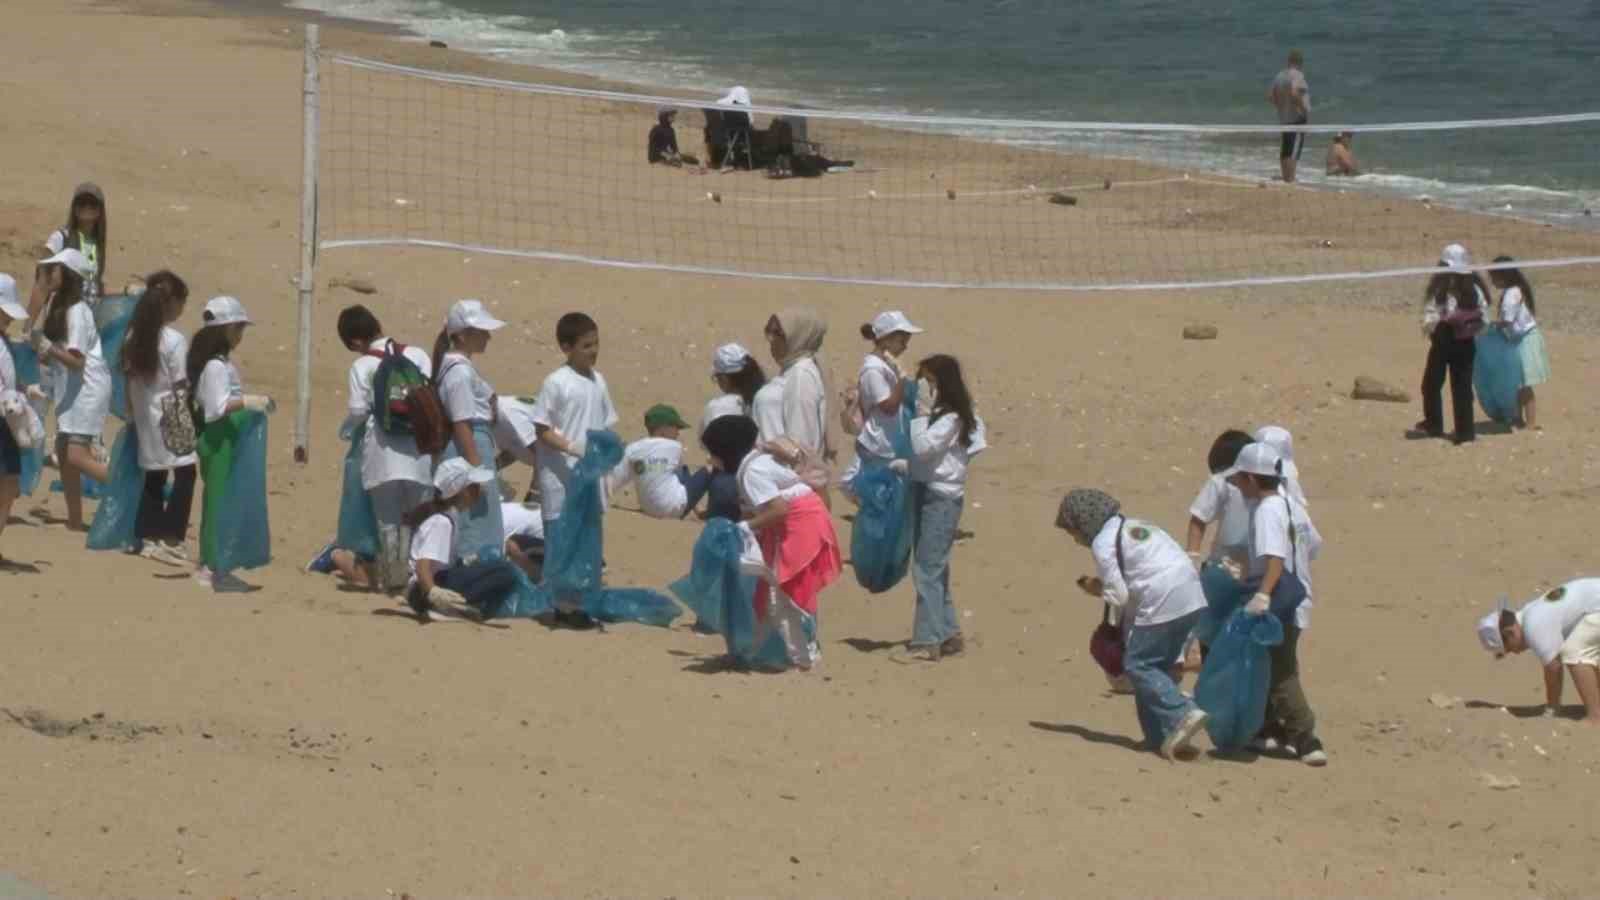 arnavutkoyde cevre haftasi nedeniyle ogrenciler karaburun sahilini temizledi 3